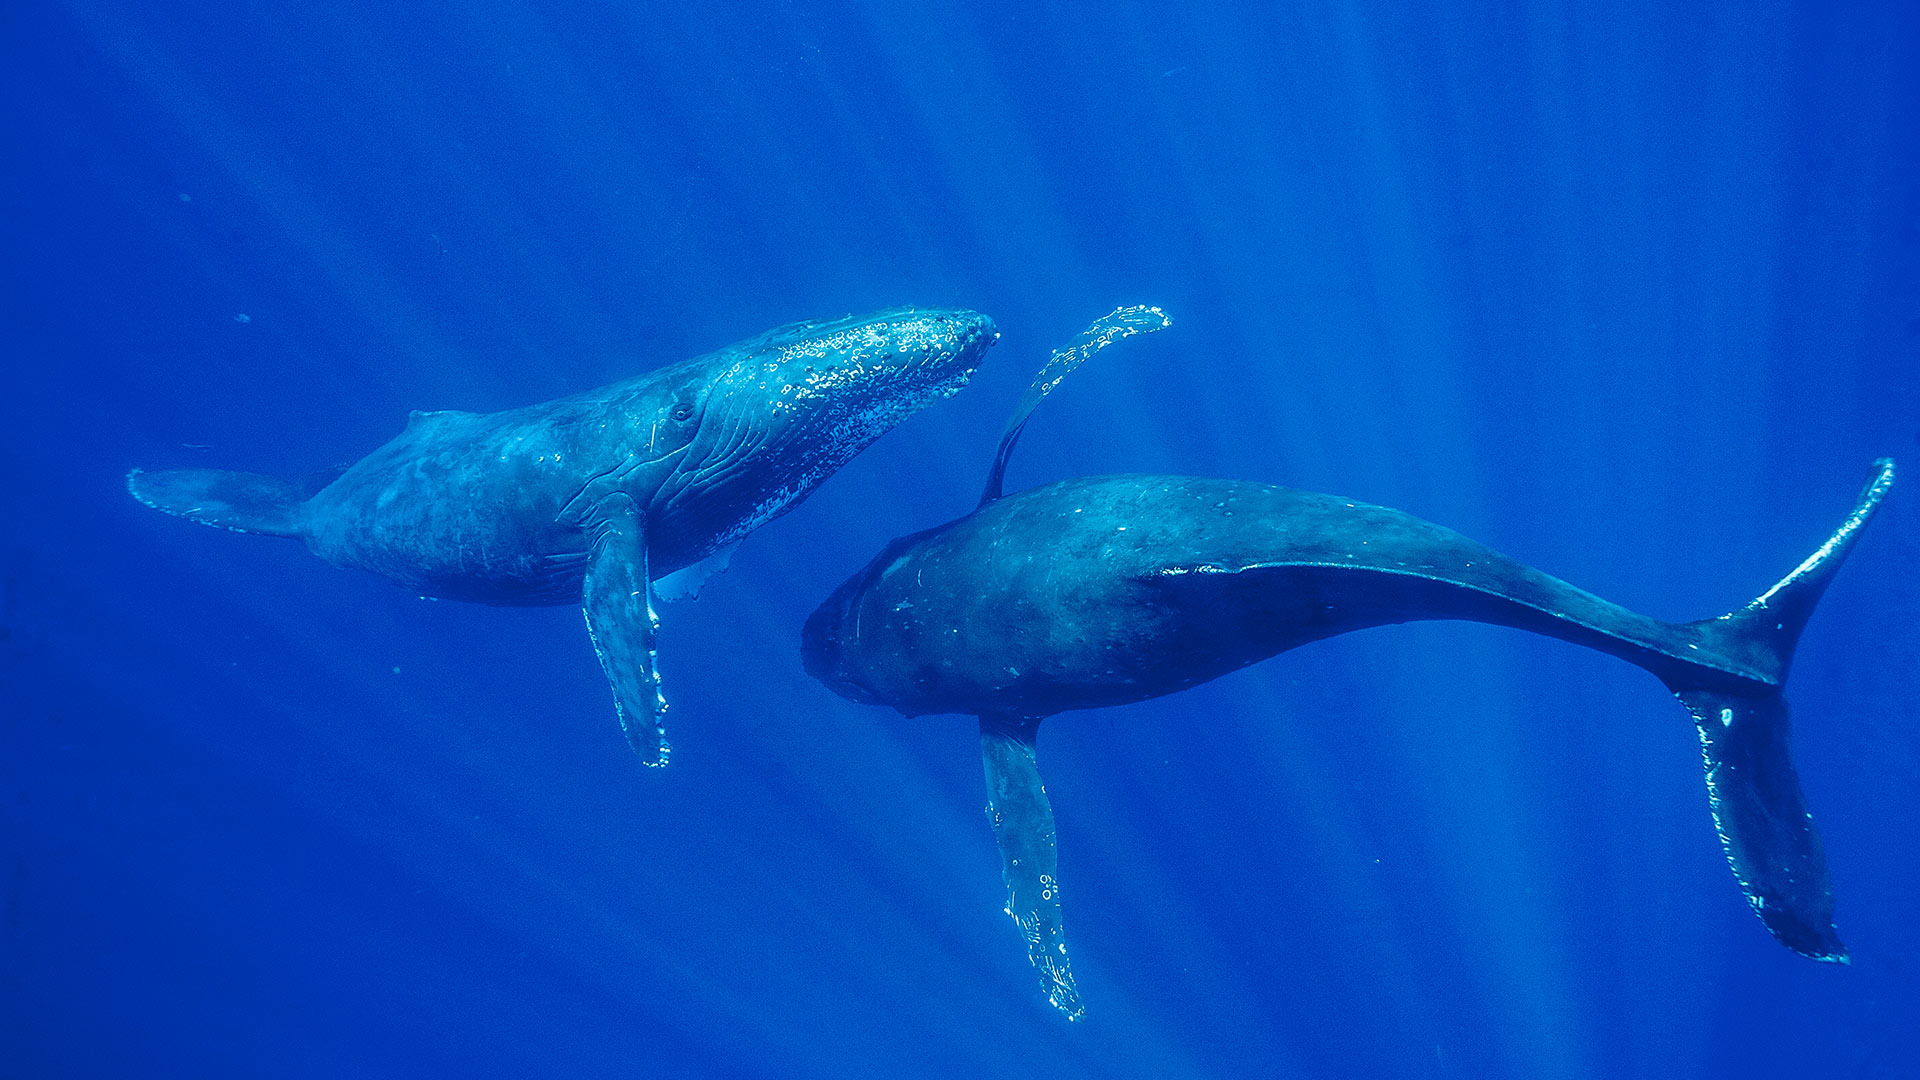 毛伊岛附近的座头鲸